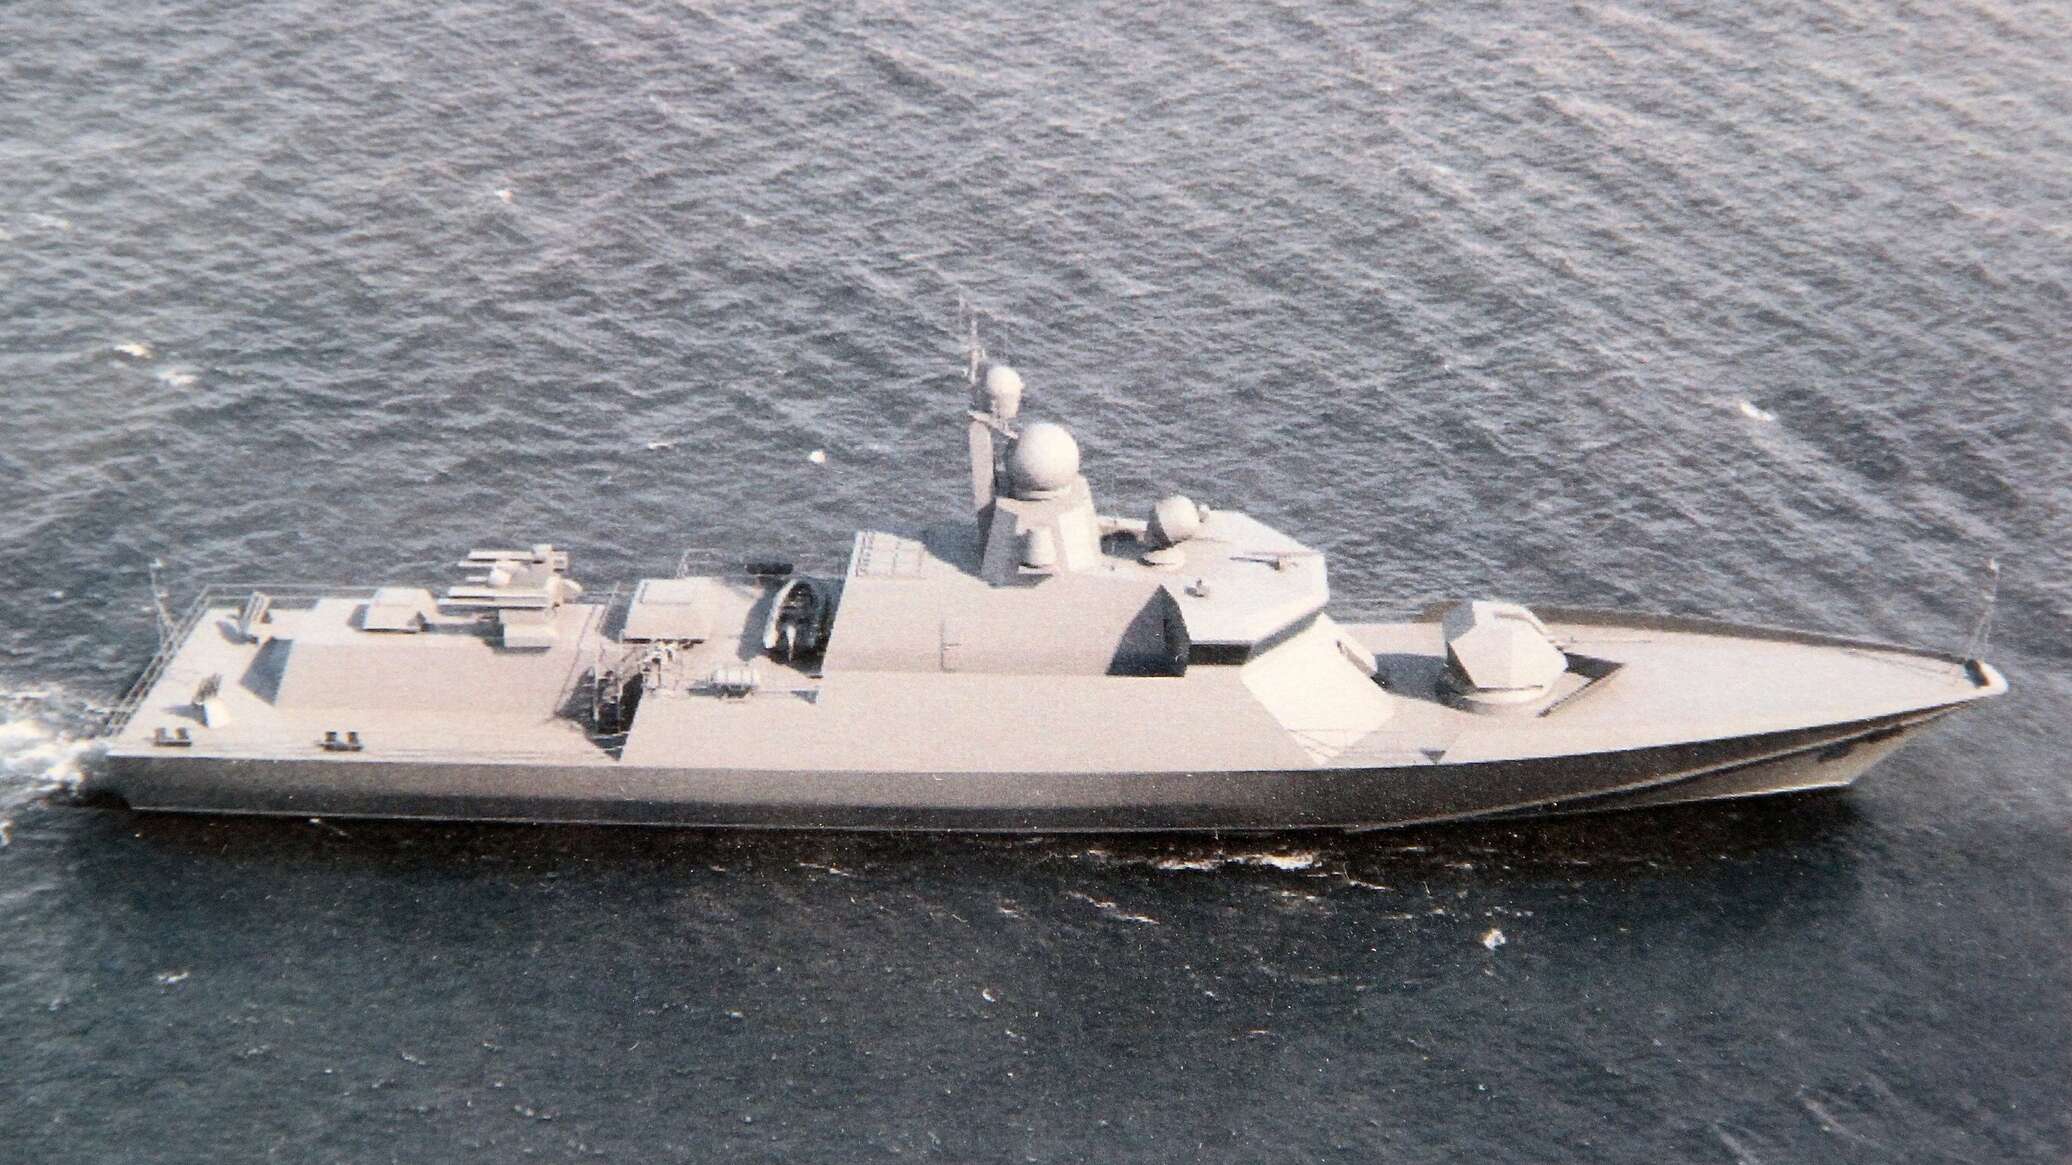 أسطول البحر الأسود يتسلم هذا العام 3 سفن صواريخ من مشروع "كاراكورت"